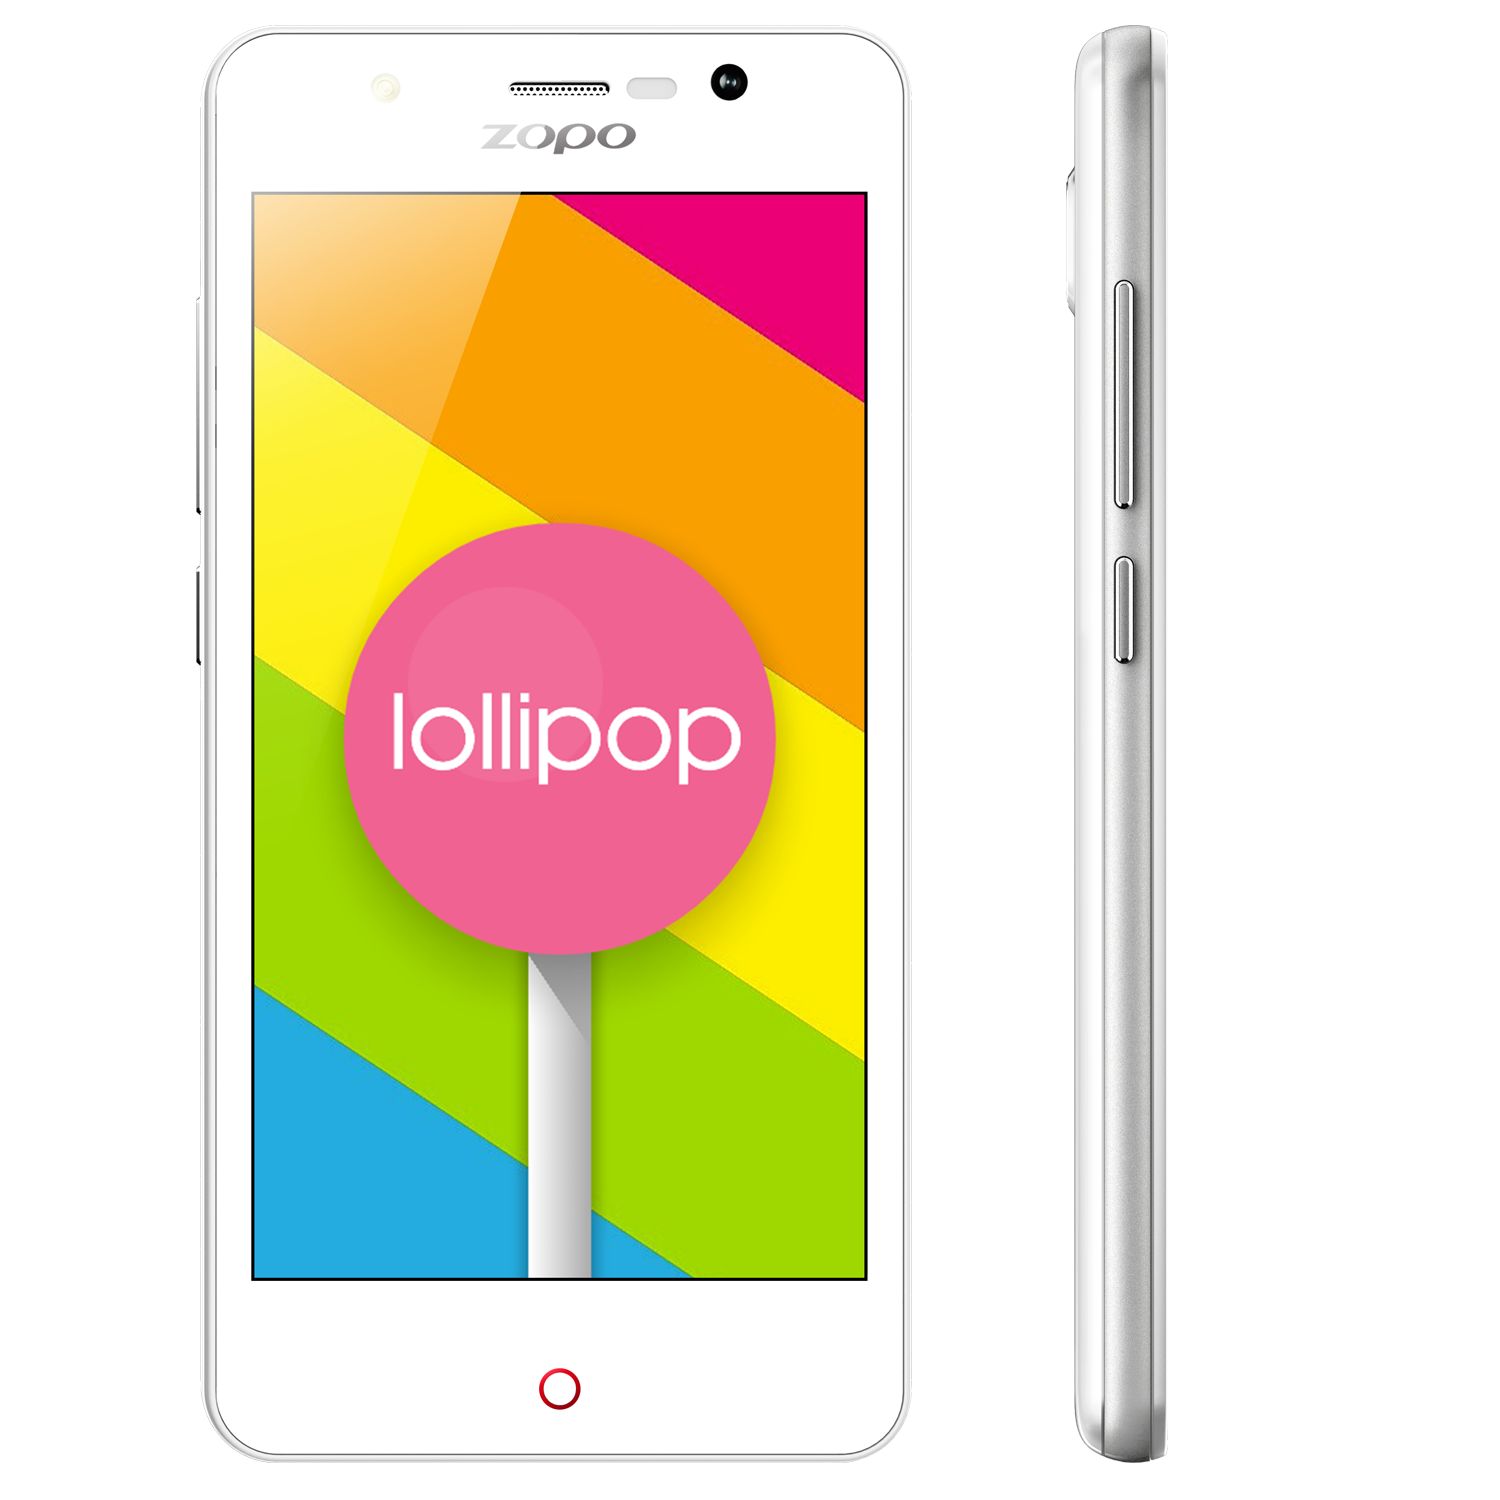 ZOPO ZP330 Smartphone 4G Android 5.1 64bit MTK6735M Quad Core 1GB 8GB 4.5 Inch White